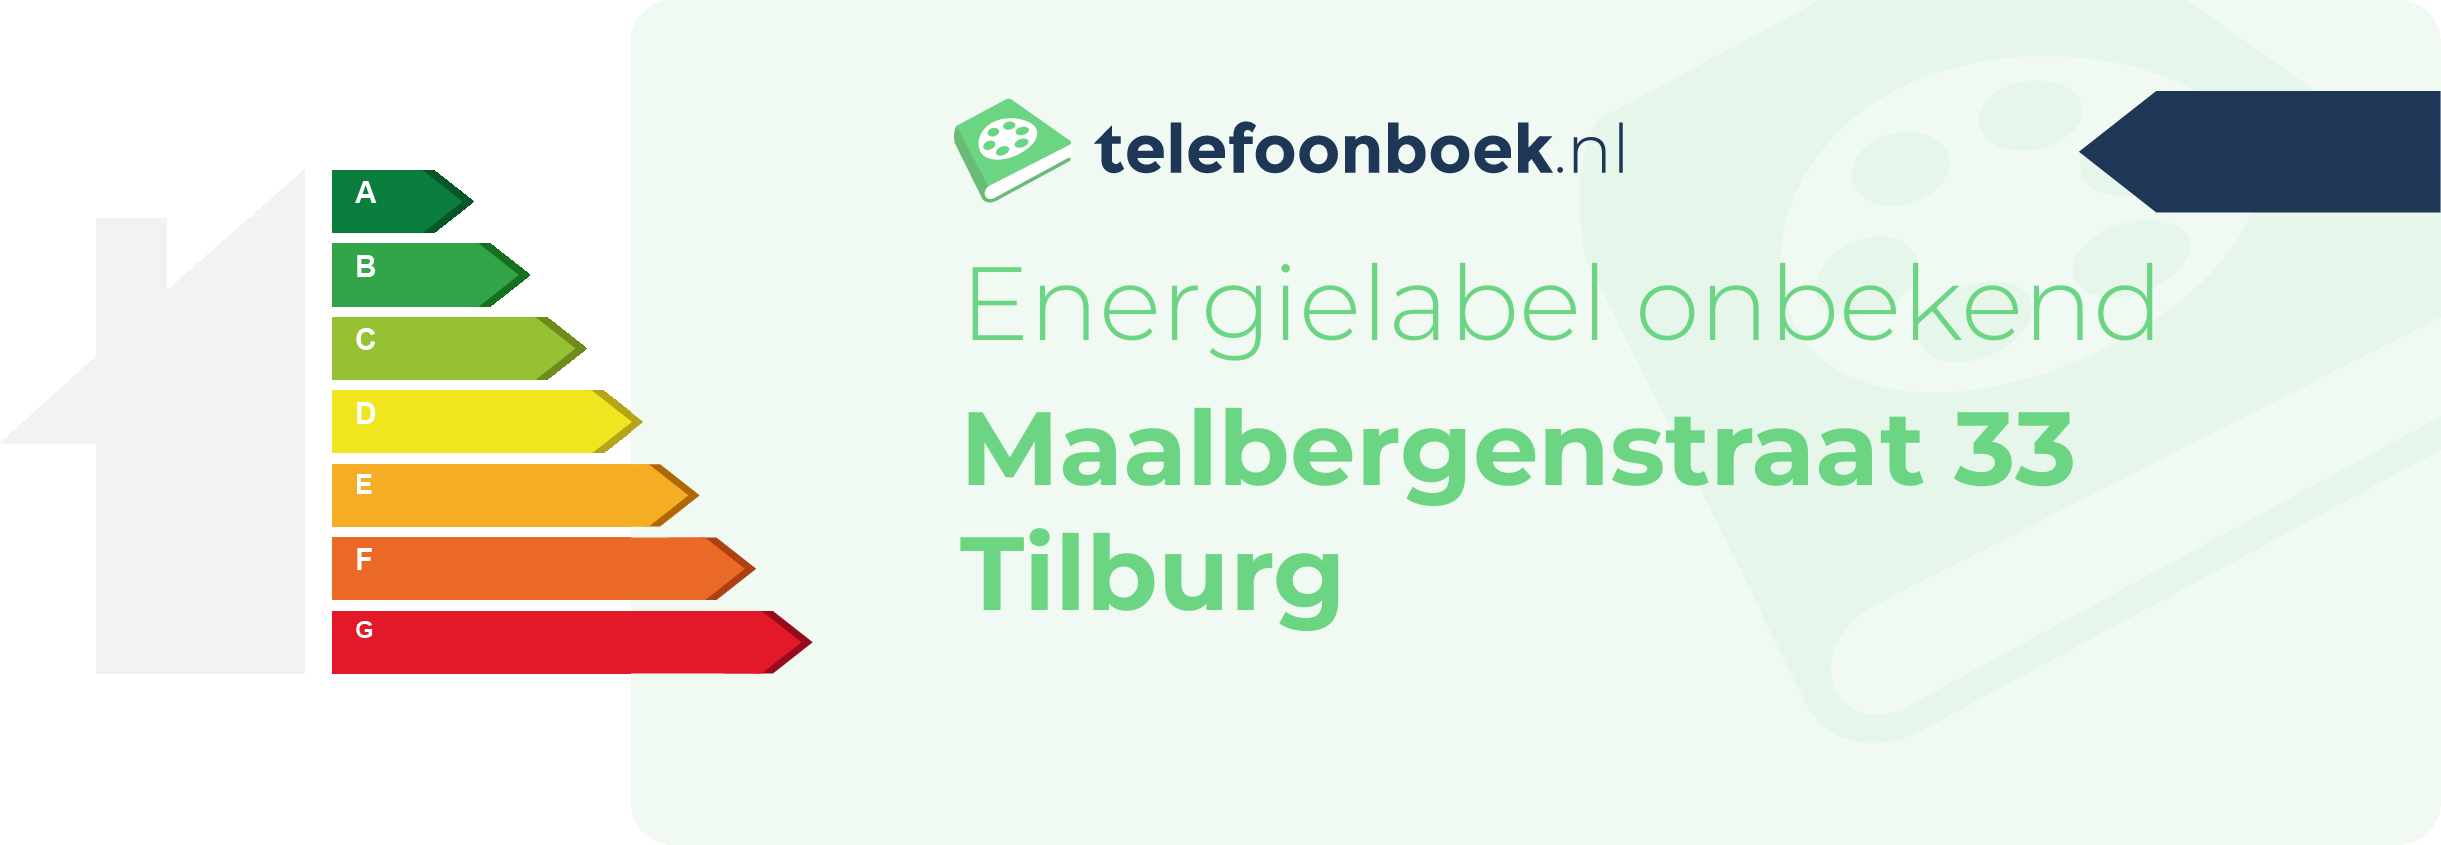 Energielabel Maalbergenstraat 33 Tilburg